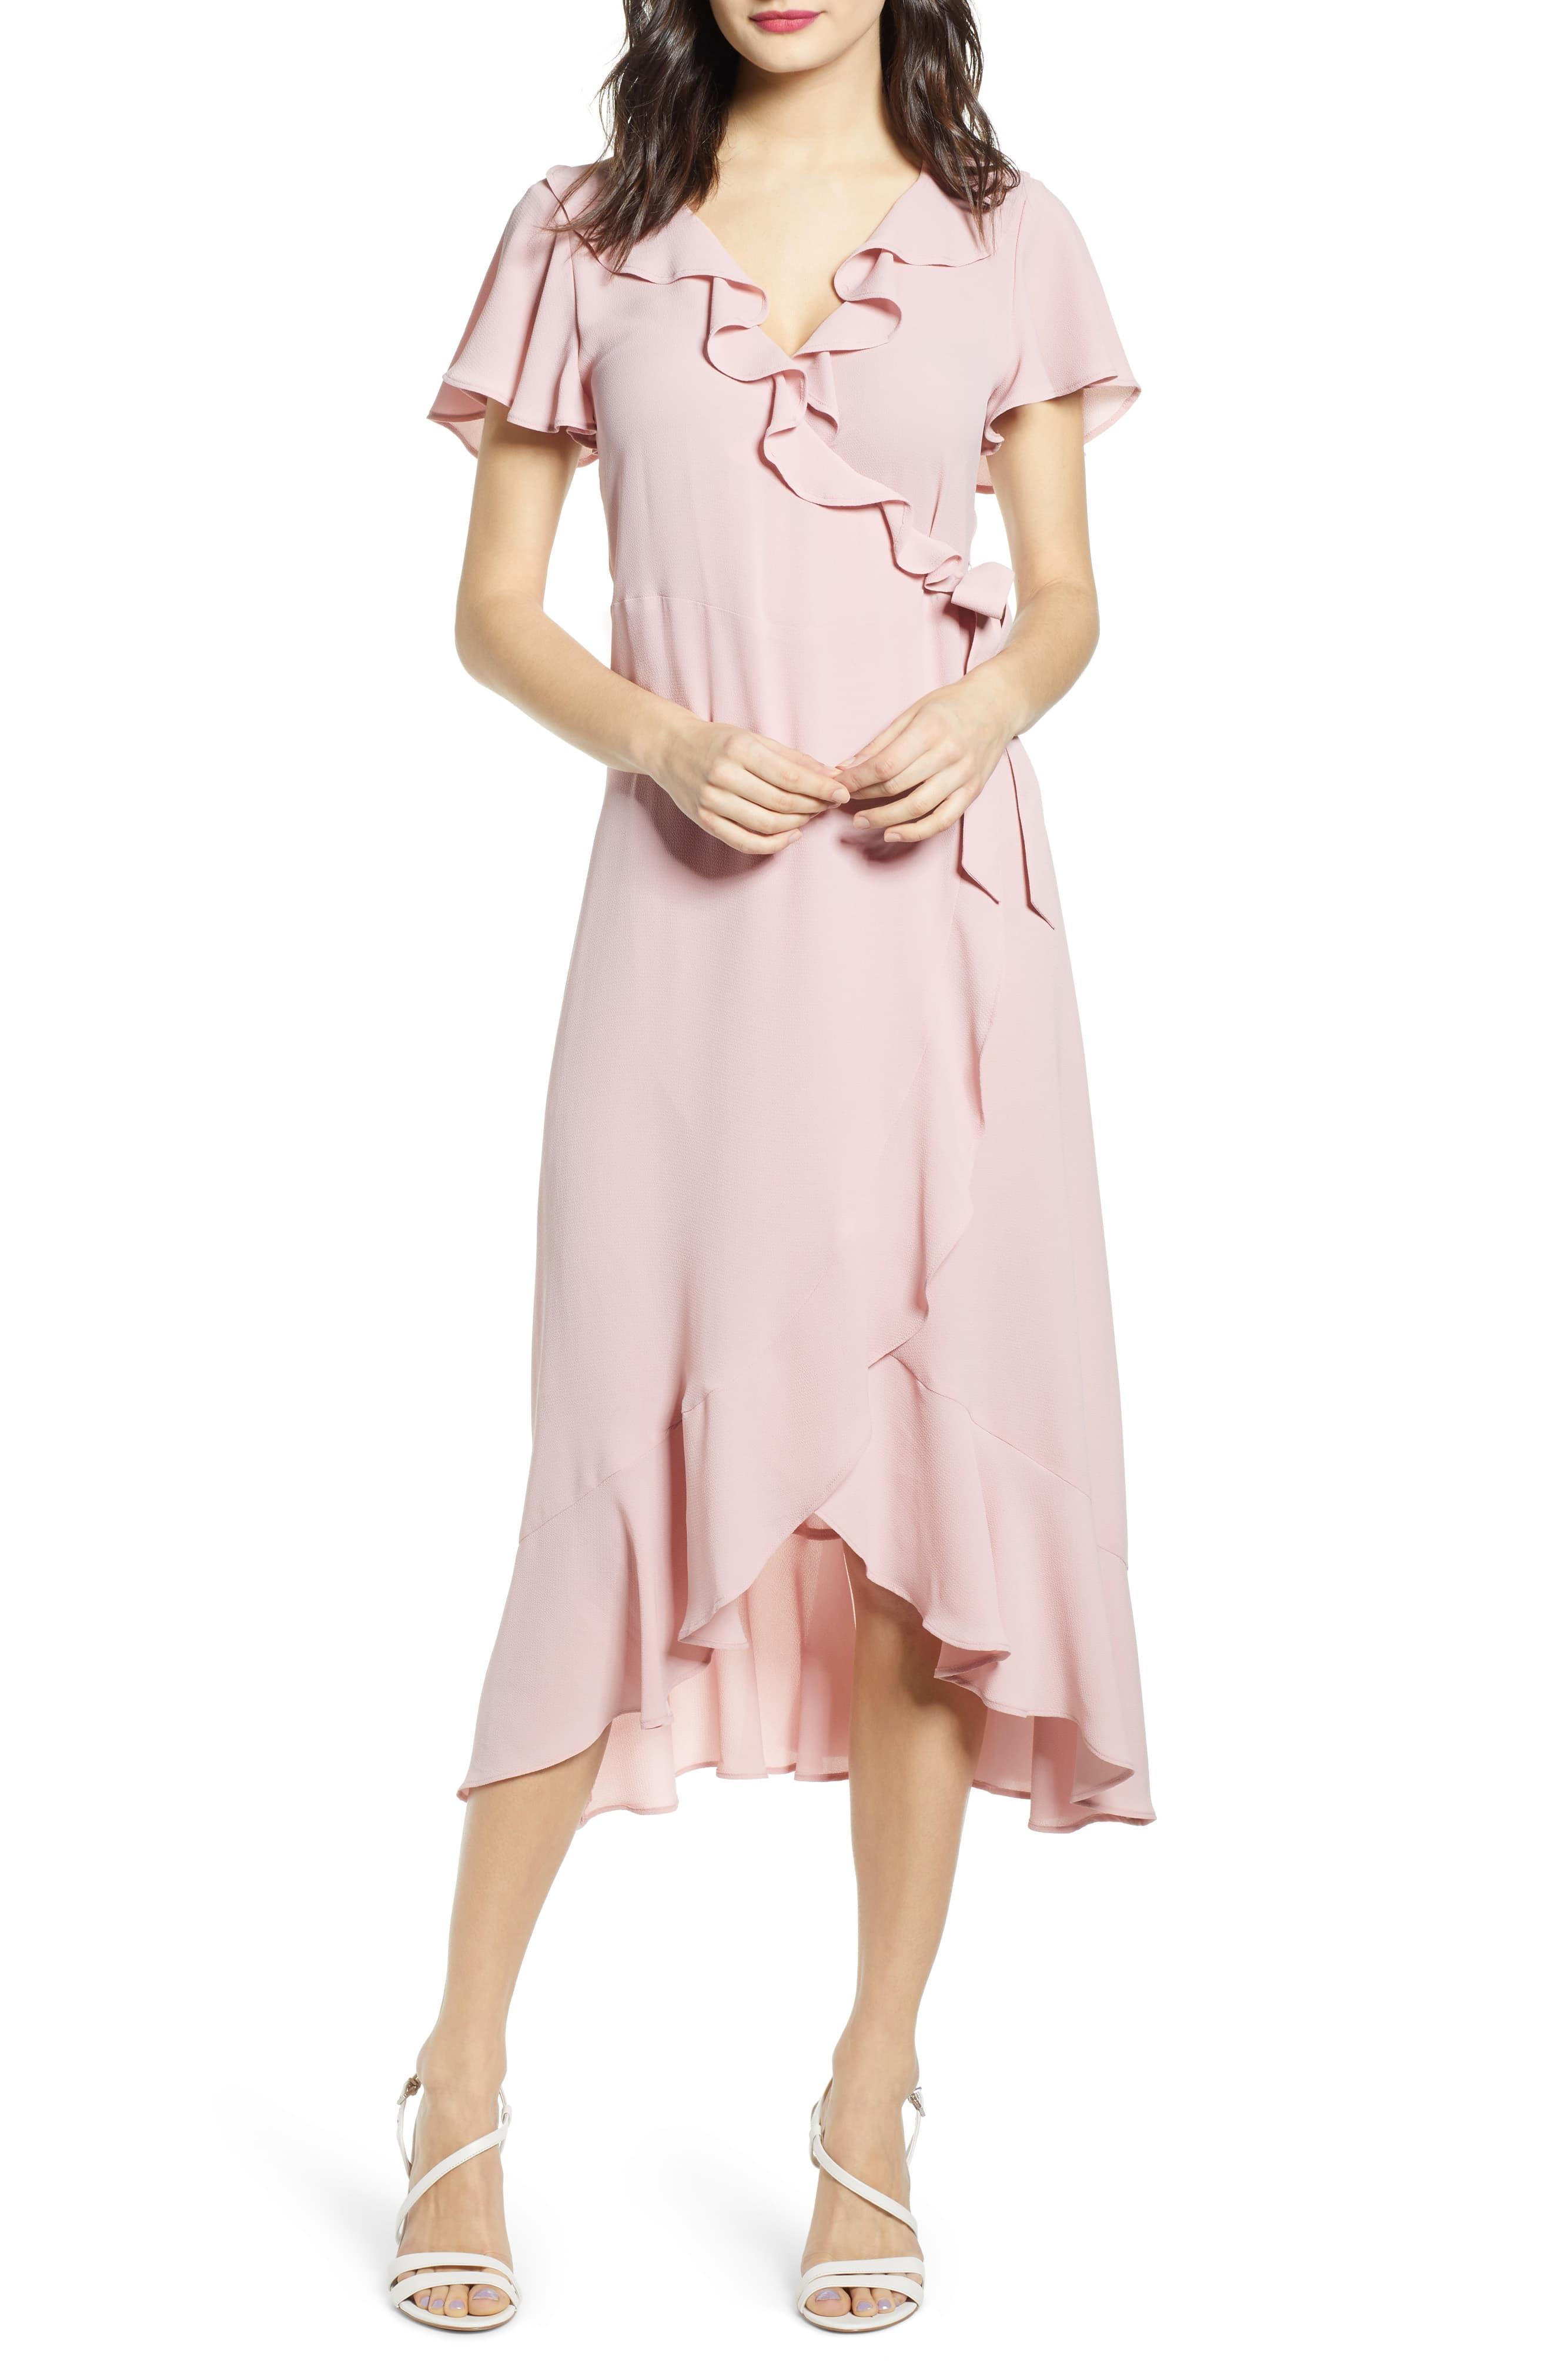 pink ruffle wrap dress